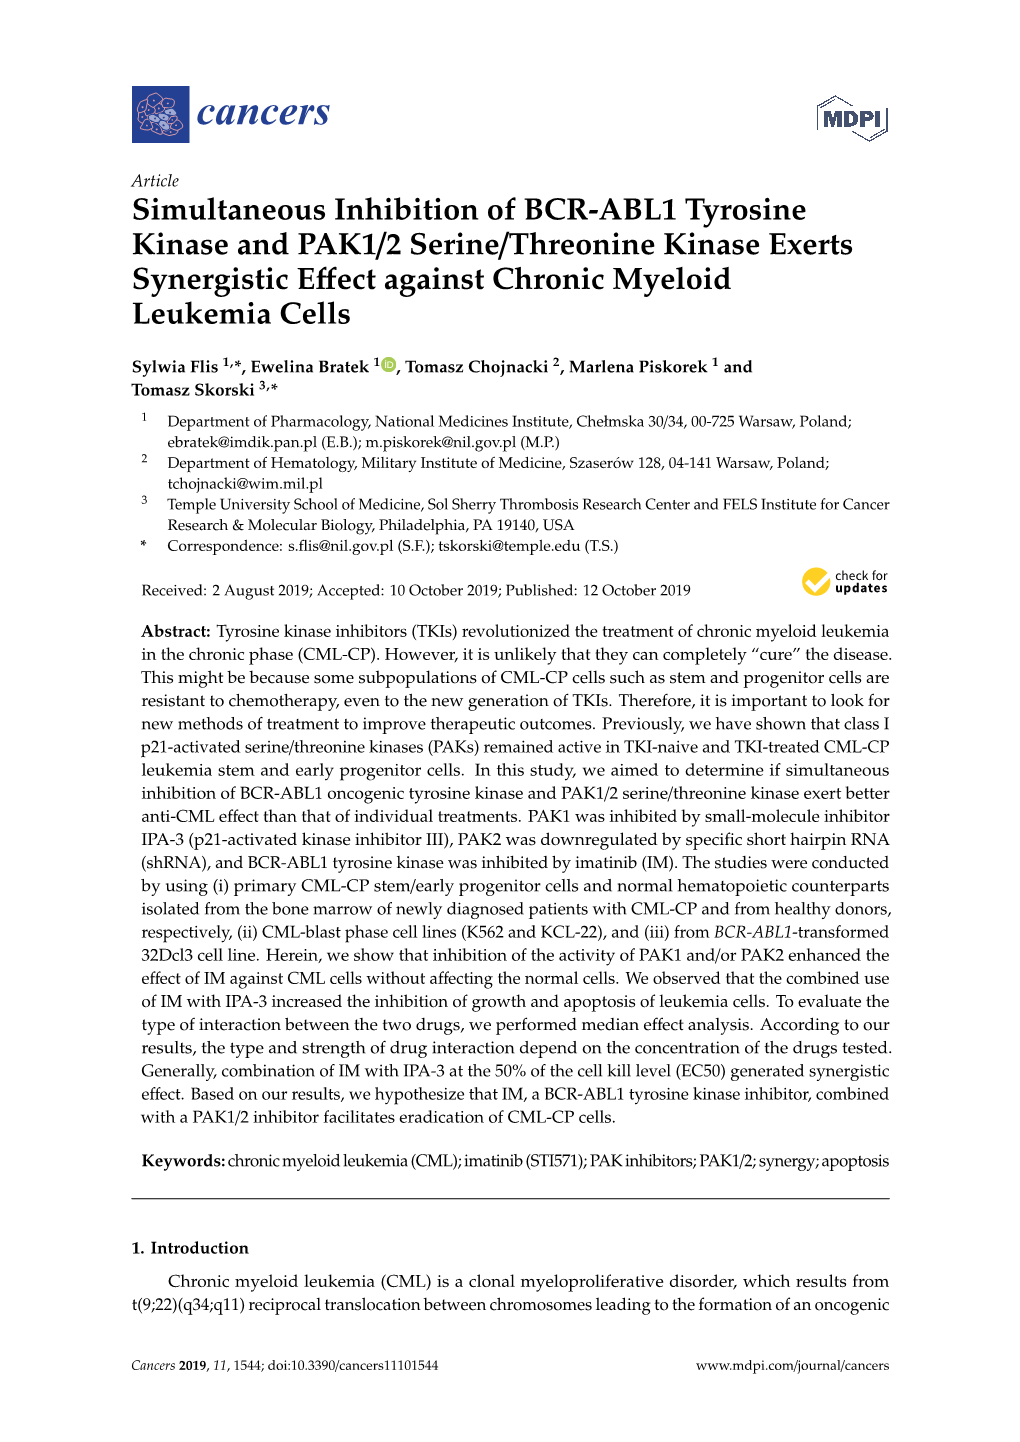 Simultaneous Inhibition of BCR-ABL1 Tyrosine Kinase and PAK1/2 Serine/Threonine Kinase Exerts Synergistic Eﬀect Against Chronic Myeloid Leukemia Cells